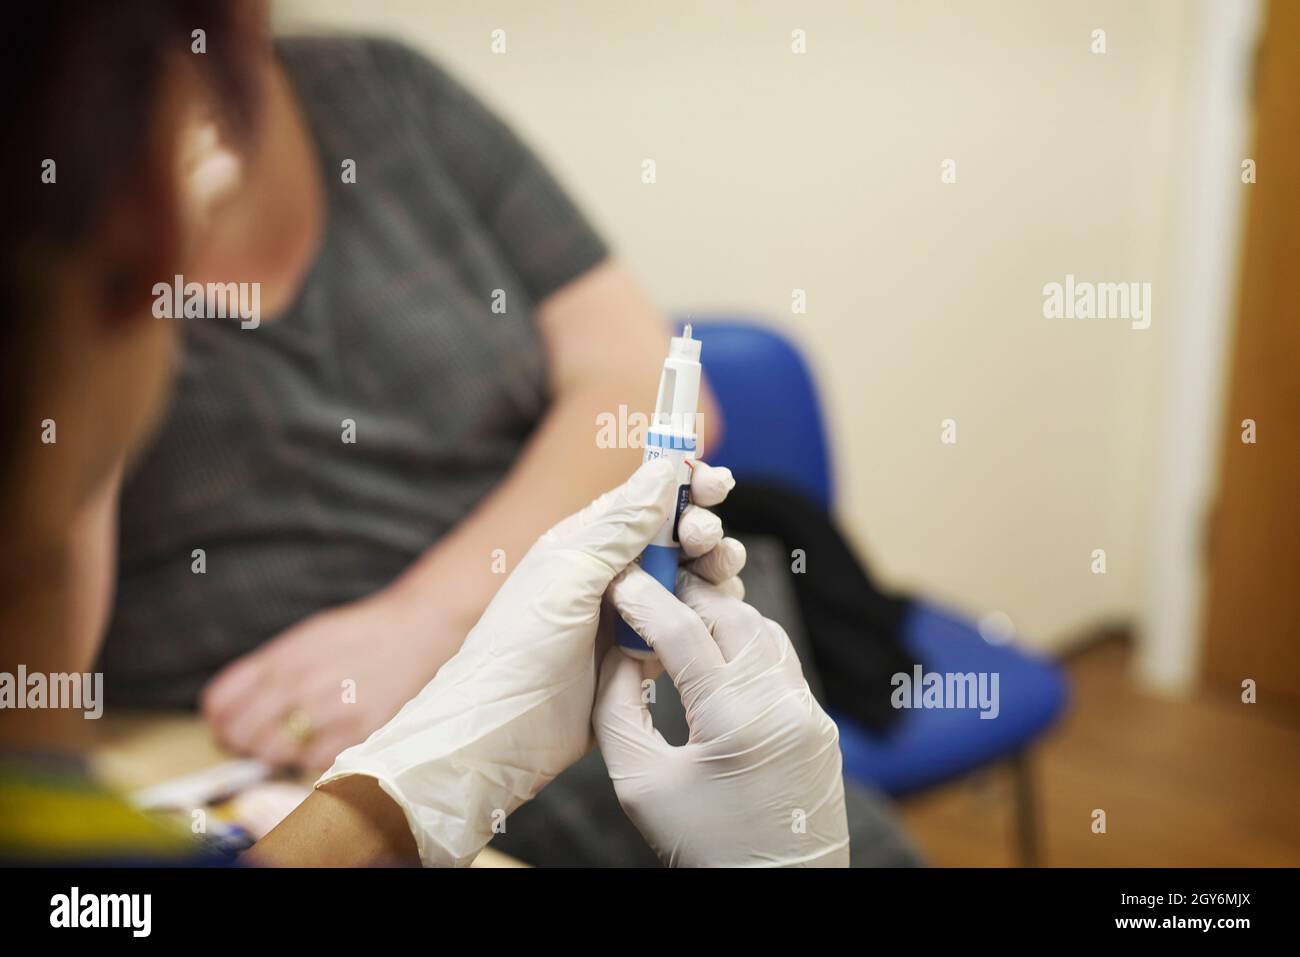 Le NHS et certains professionnels de santé privés administrent des vaccins en chirurgie au Royaume-Uni Banque D'Images